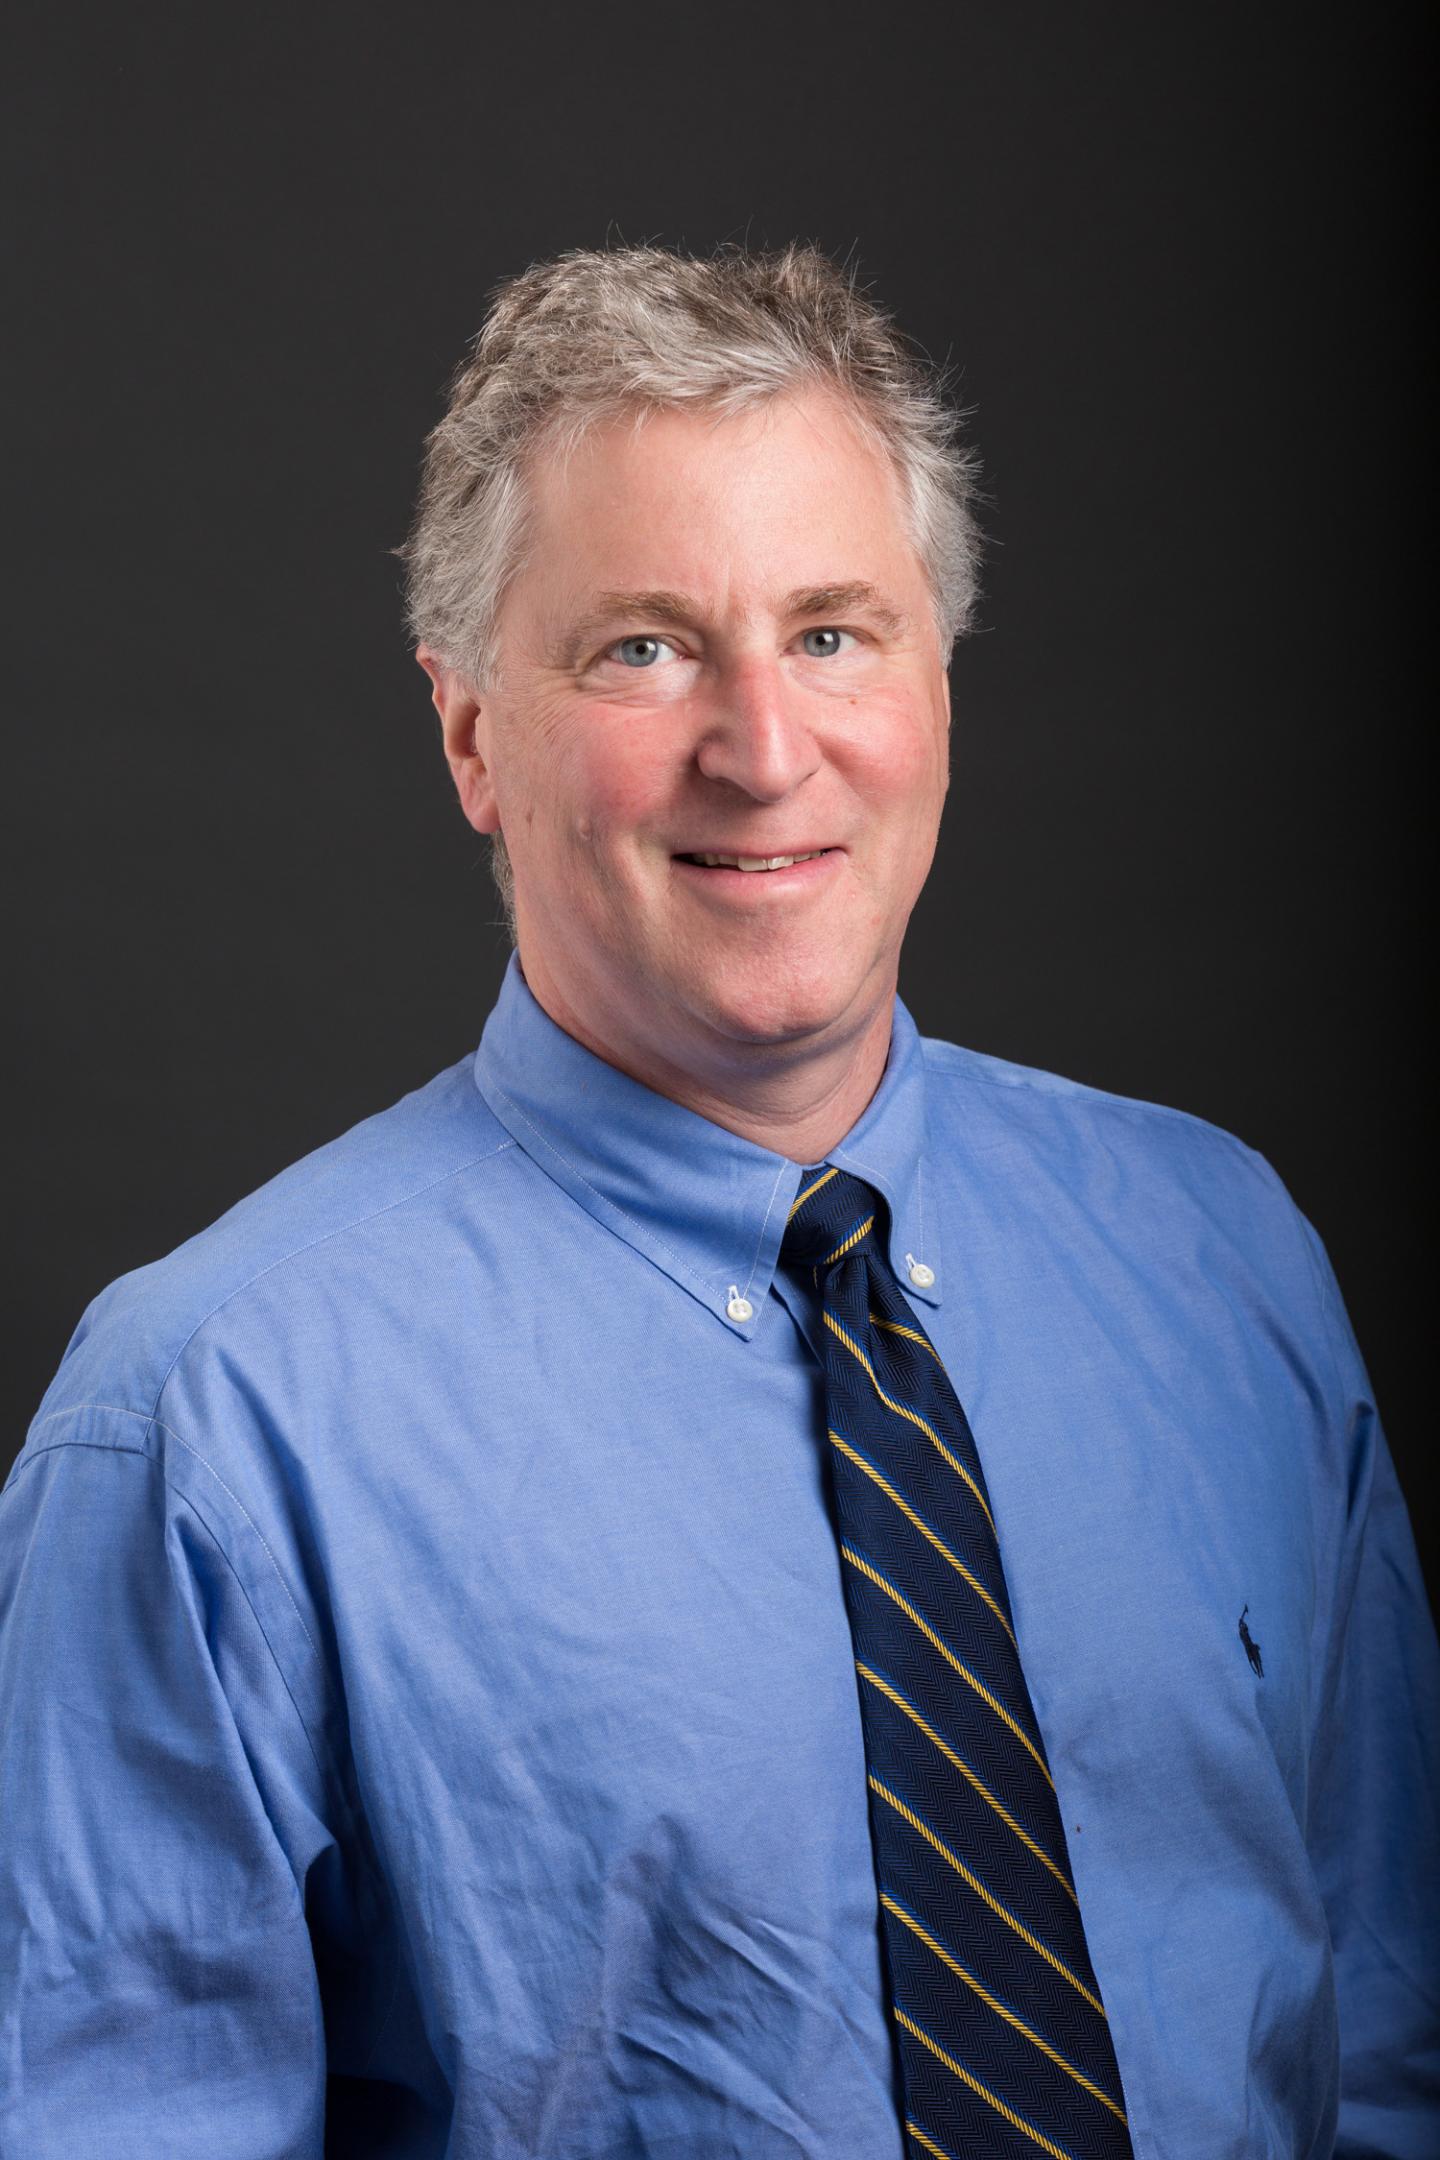 Peter M. Glazer, MD, PhD